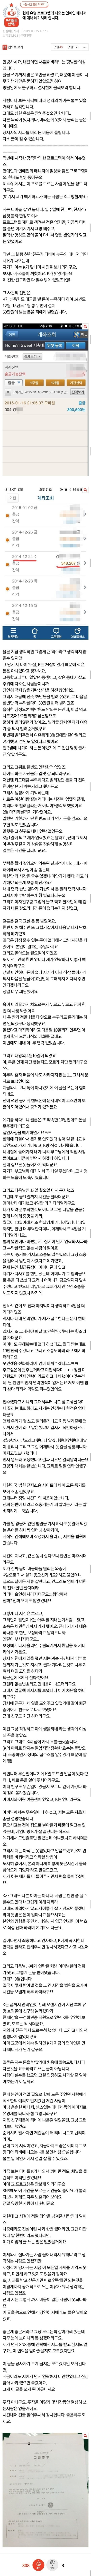 이승윤 매니저 강현석 사건 정리, 강현석 몰카 /1부터 10까지 다른글 볼필요없음.